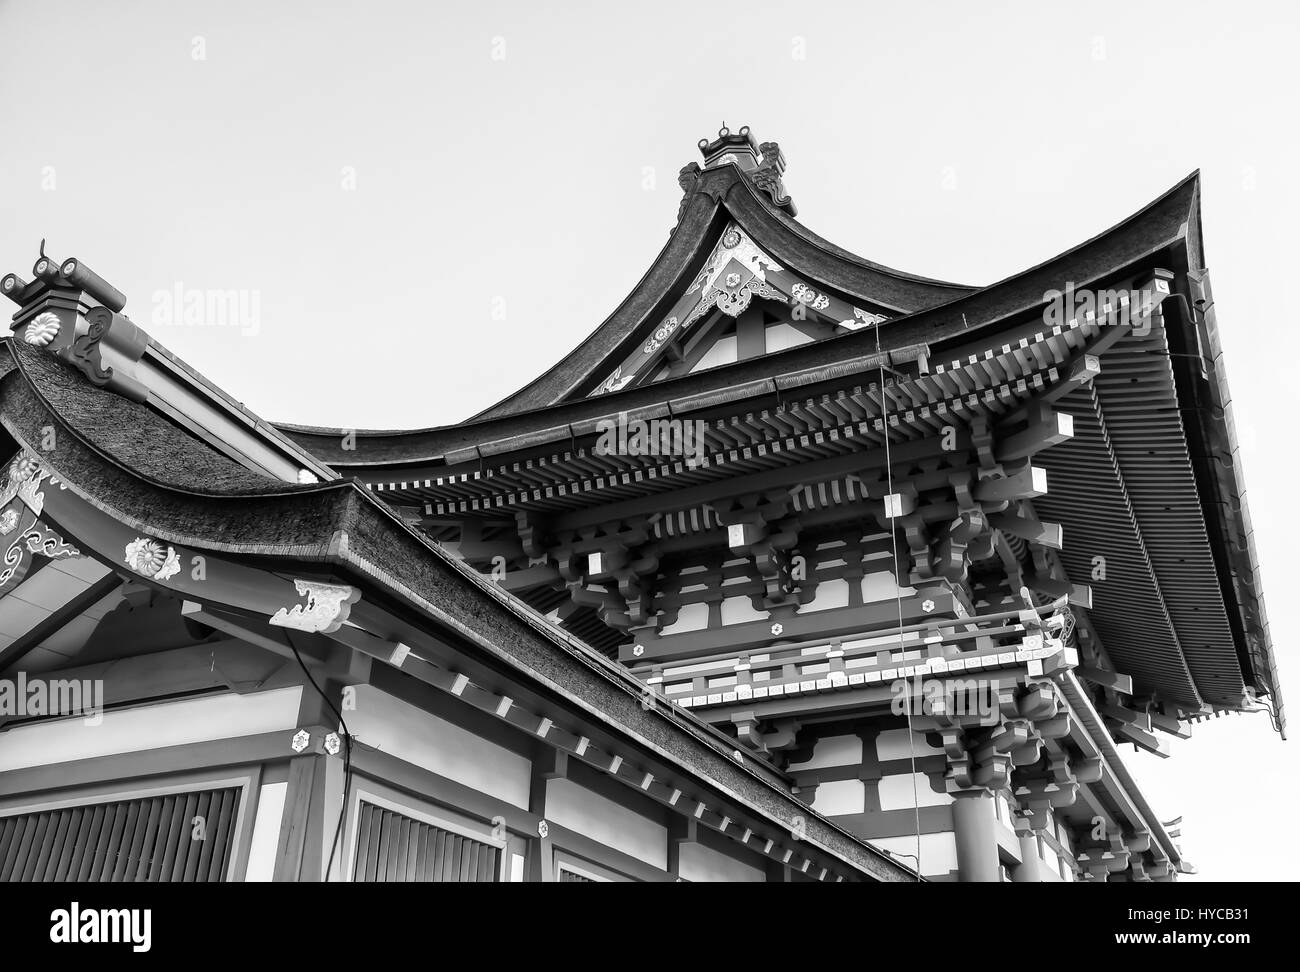 Belle architecture de temple Kiyomizu-Dera, Kyoto, Japon (noir et blanc) Banque D'Images